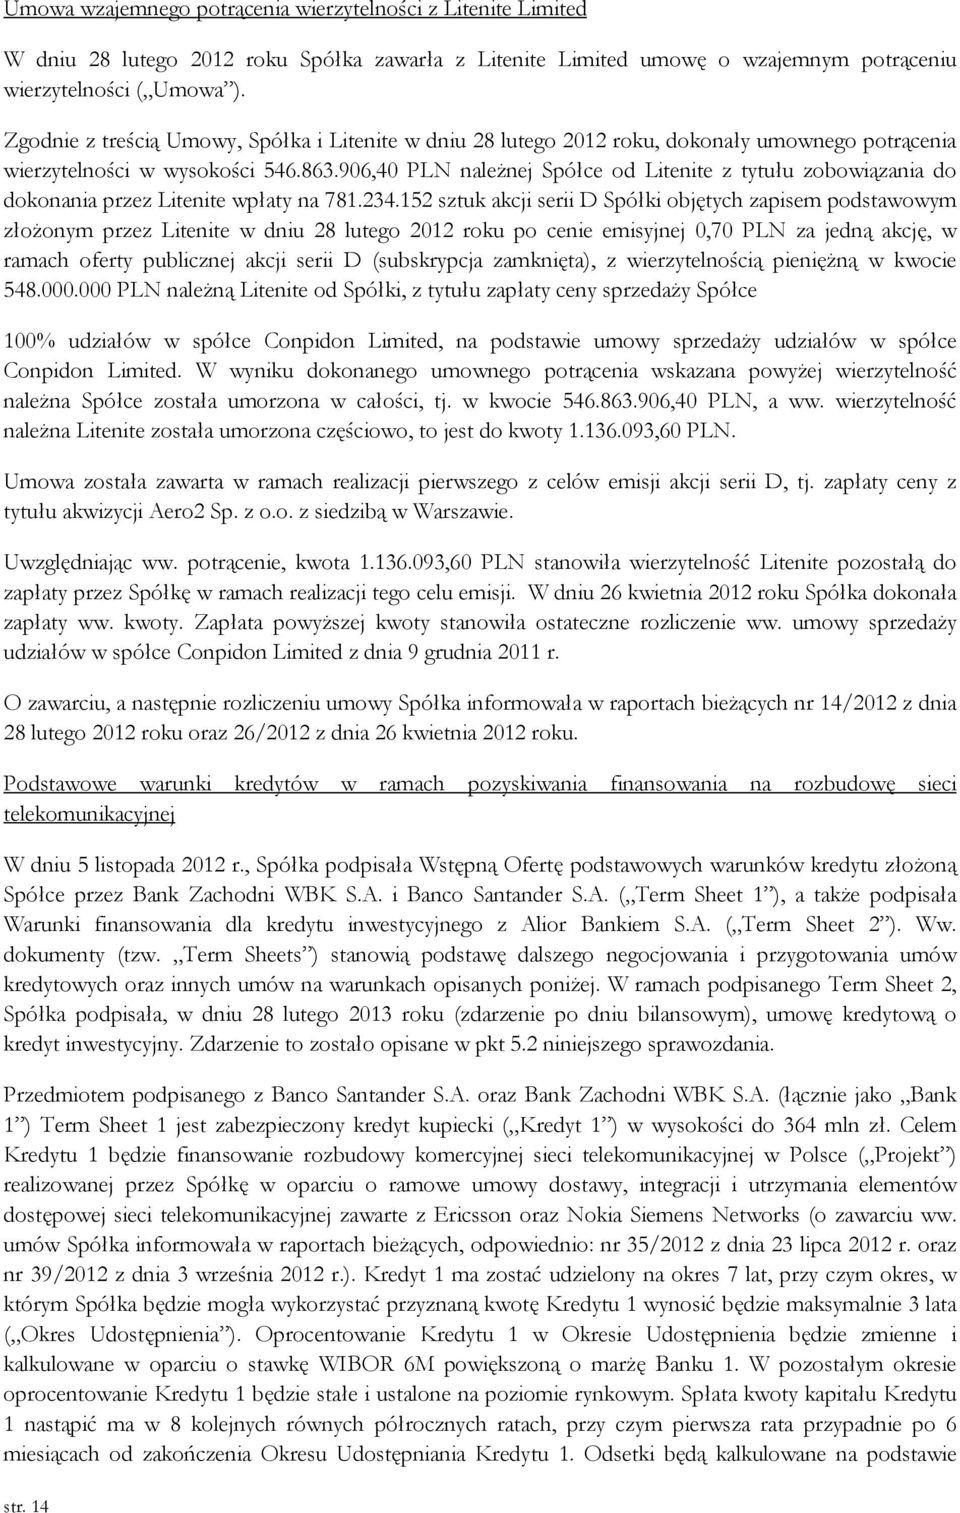 906,40 PLN należnej Spółce od Litenite z tytułu zobowiązania do dokonania przez Litenite wpłaty na 781.234.